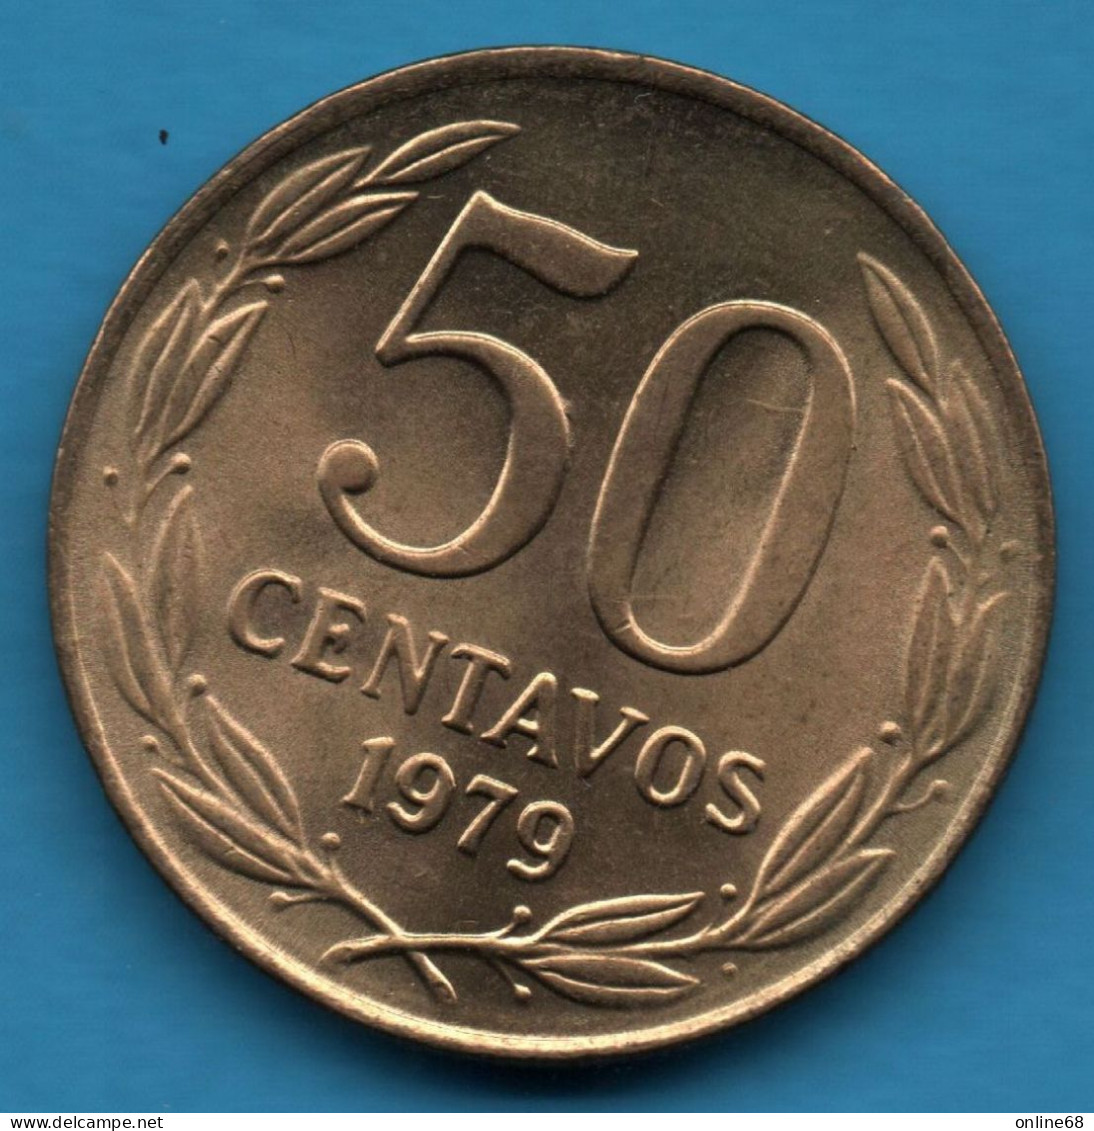 CHILE 50 CENTAVOS 1979 KM# 206a CONDOR - Cile